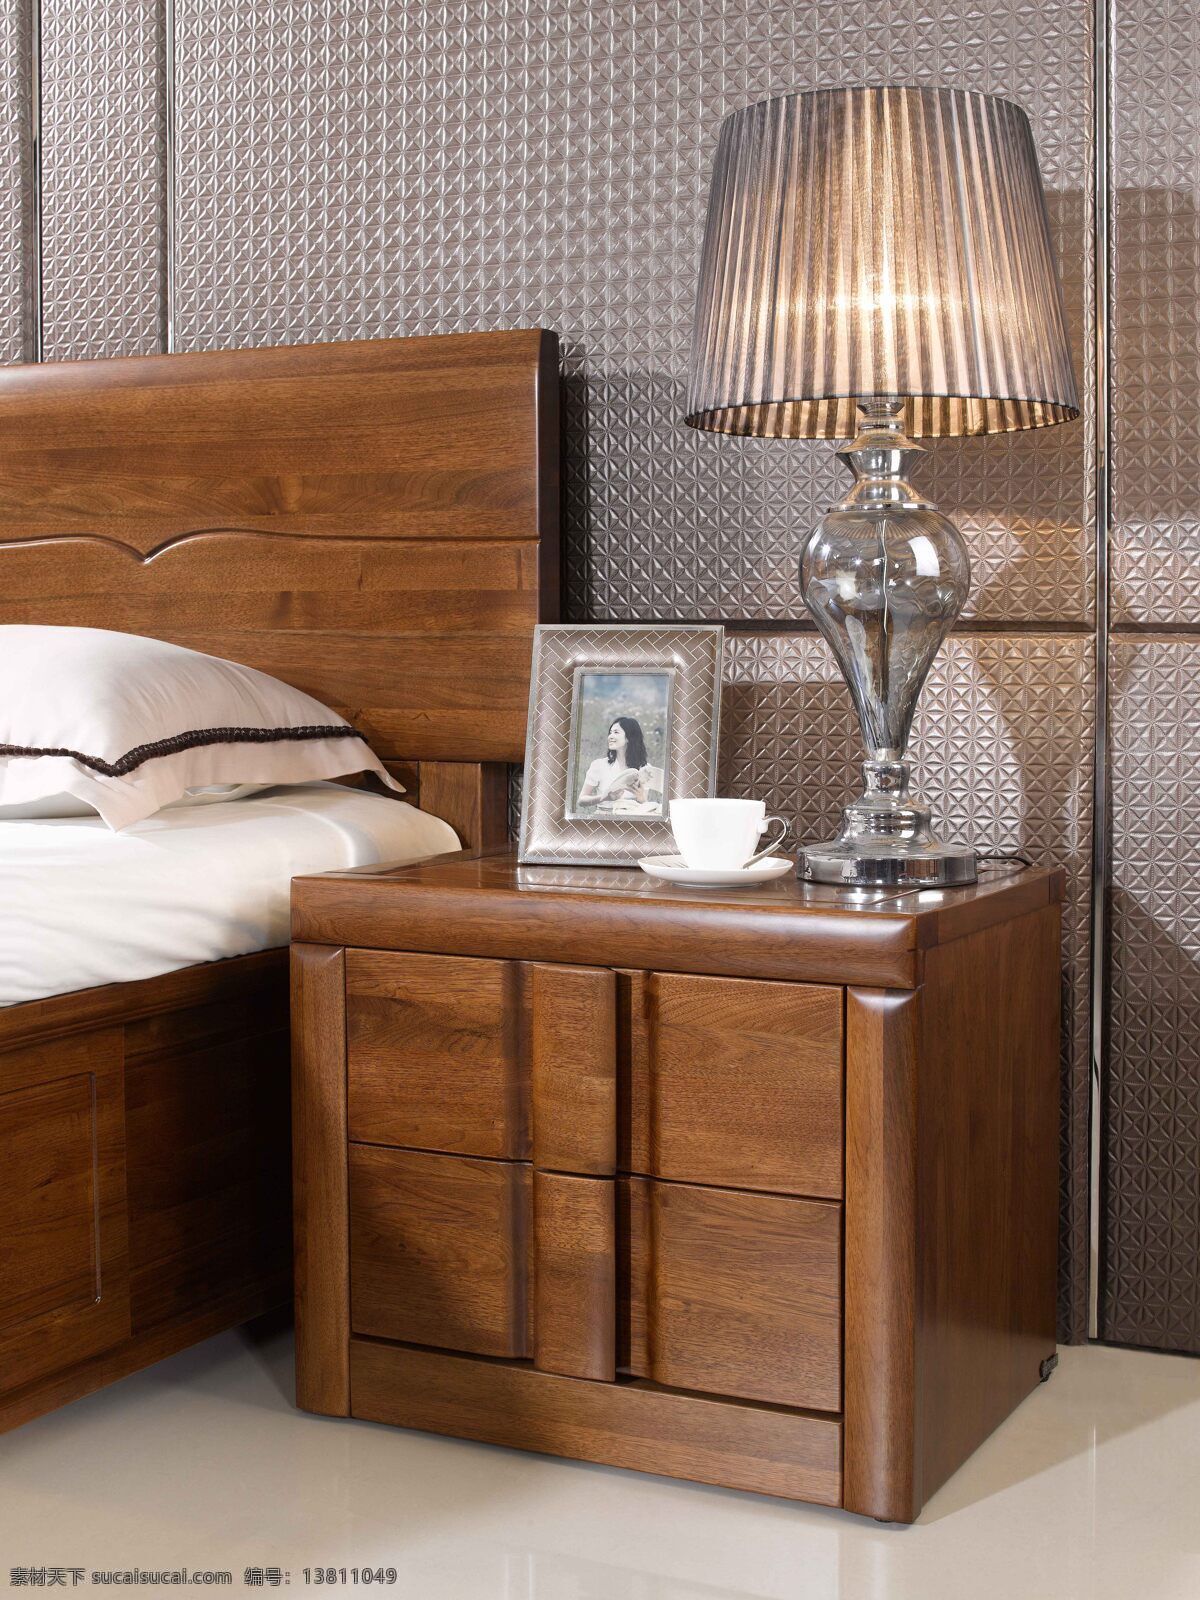 床头柜 环境设计 家具 实木 室内设计 缇香公馆 东升家具 木制家具 家居装饰素材